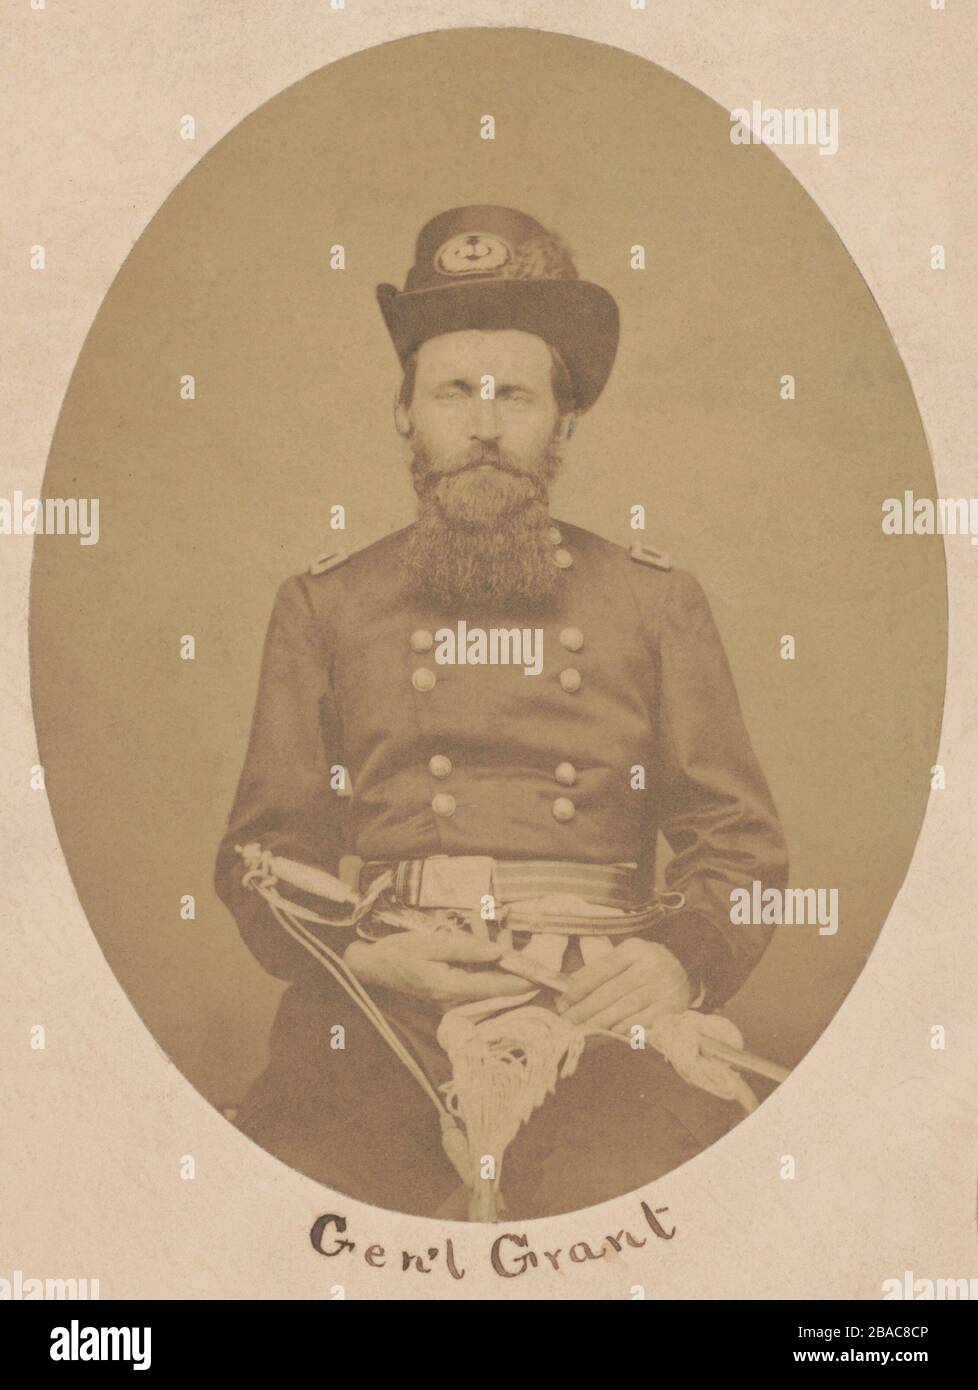 Il generale dell'Unione Brigadier Ulysses Grant in ritratto preso al Cairo, Illinois all'inizio della guerra civile degli Stati Uniti. Ha una barba quadrata, sotto la barba del mento tagliata più da vicino. Questo ritratto creò la sua immagine pubblica quando divenne famoso dopo la battaglia di Fort Donelson, nel febbraio 1862. Rimase la sua immagine pubblica fino alla comparsa del ritratto di Mathew Brady nel marzo 1864 (BSLOC 2018 7 71) Foto Stock